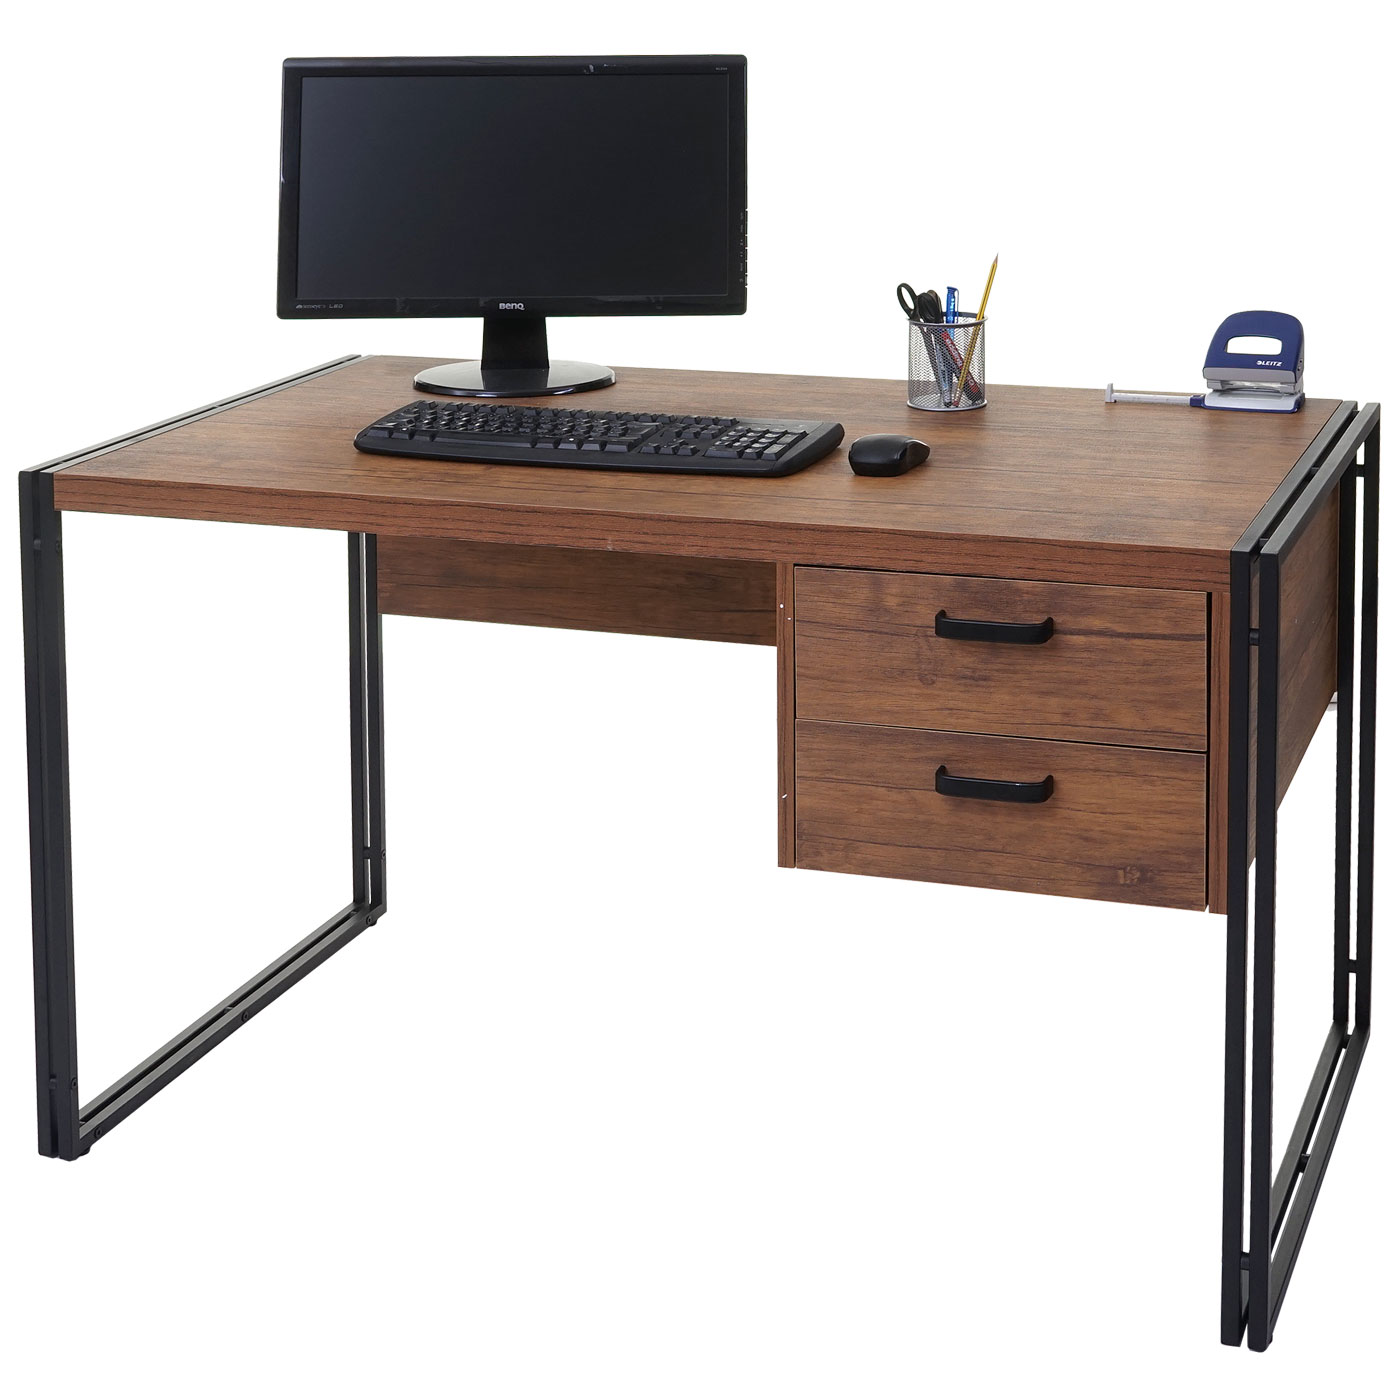 Столы письменные производитель. Стол 120 Activa Metal. Компьютерный стол. Письменный столик. Стол компьютерный офисный.